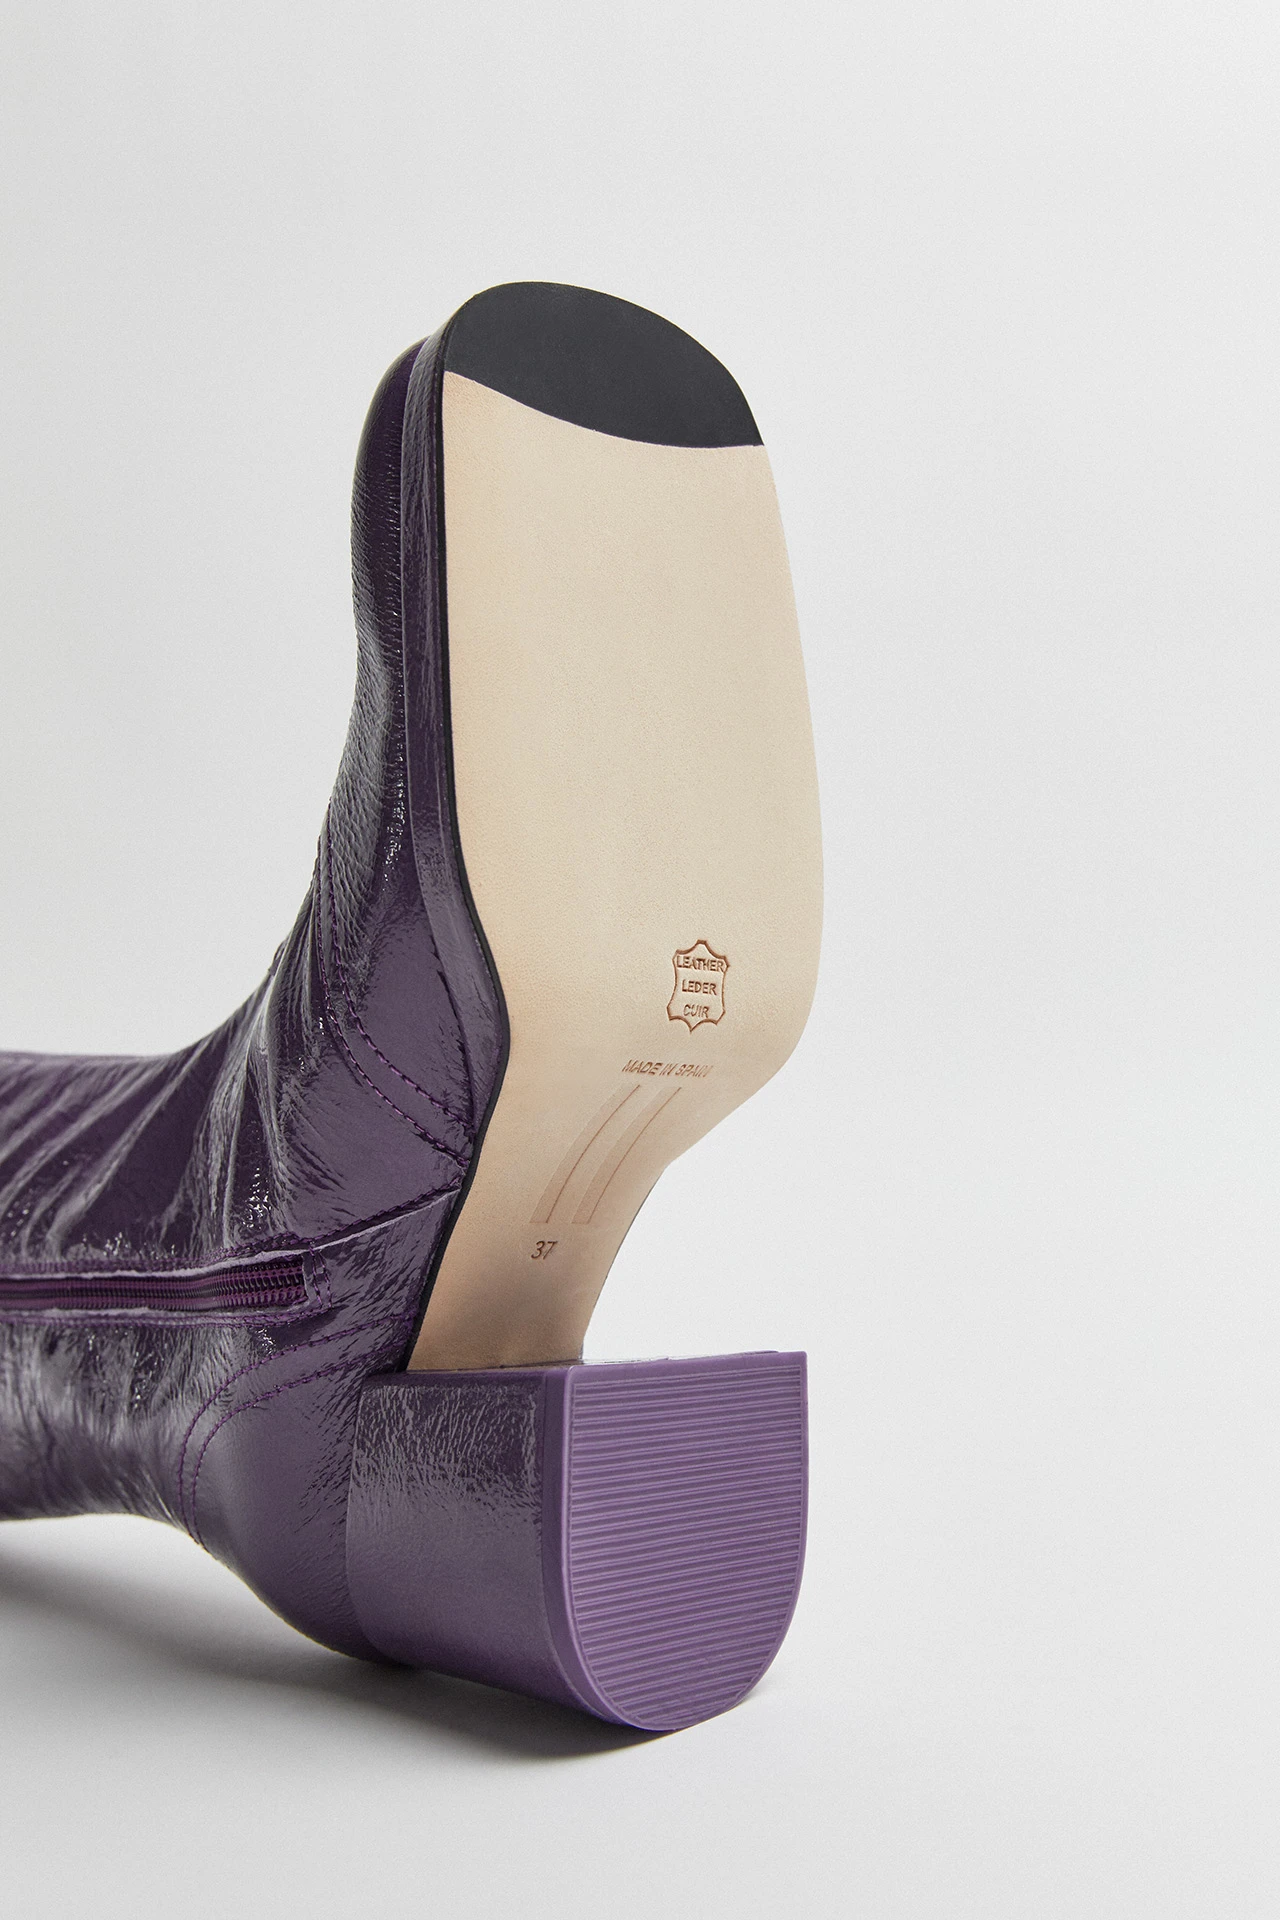 Miista-cass-purple-boots-06